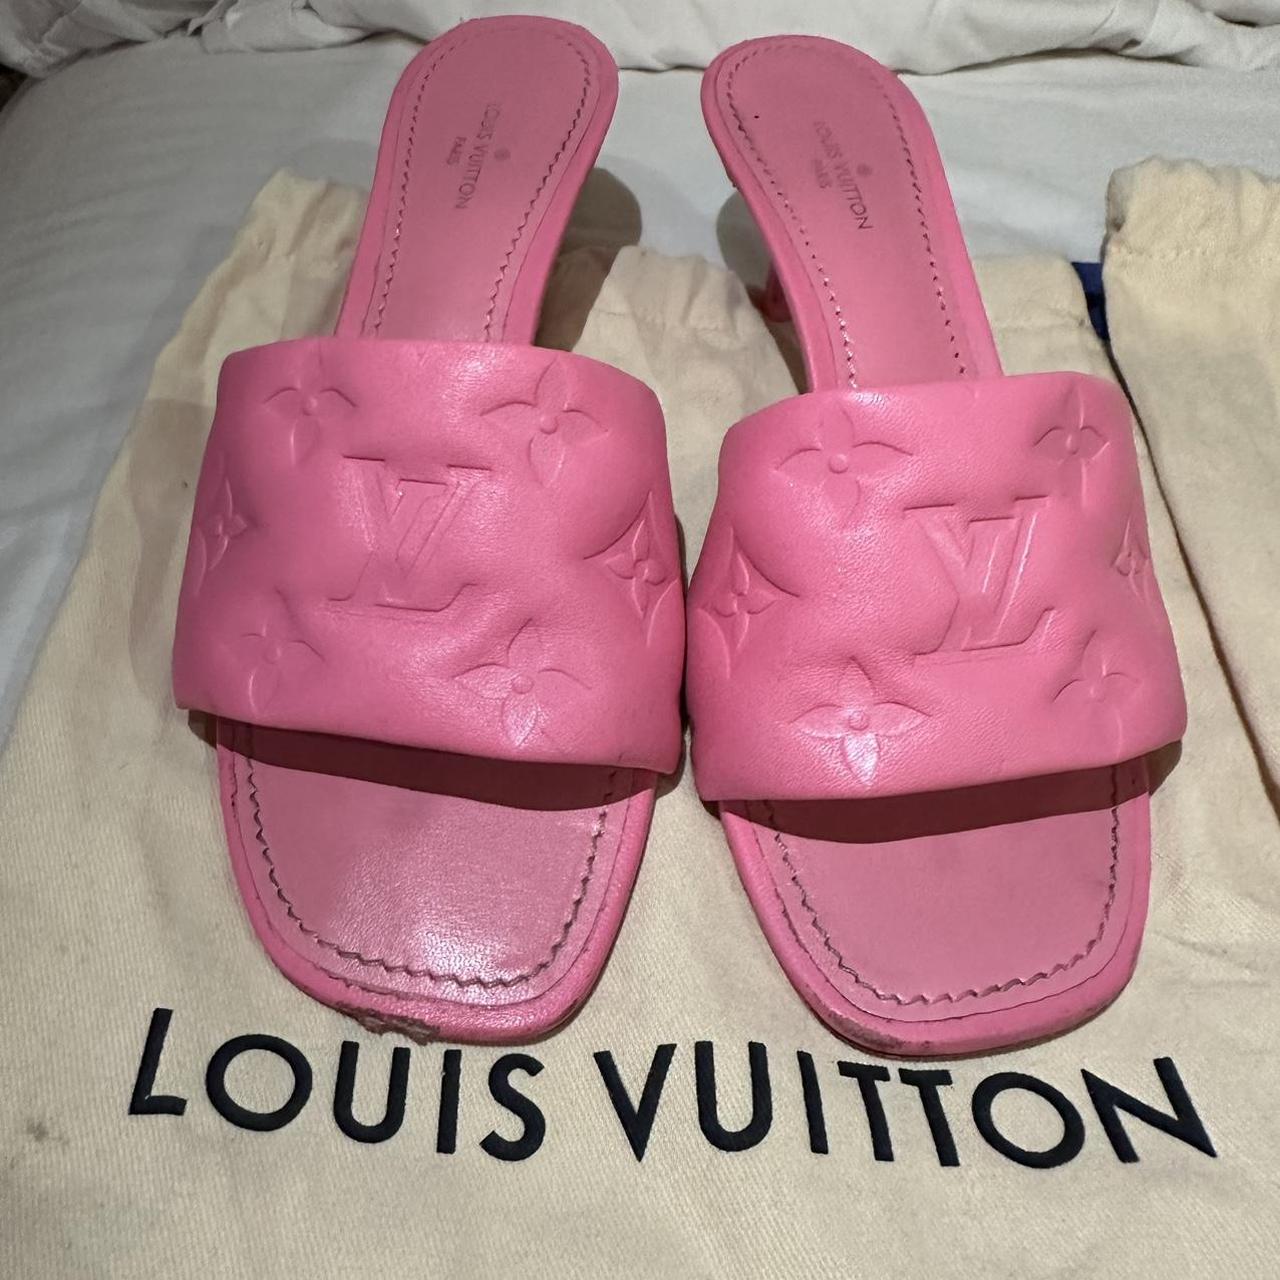 Louis Vuitton, Shoes, Louis Vuitton Revival Light Pink Mules